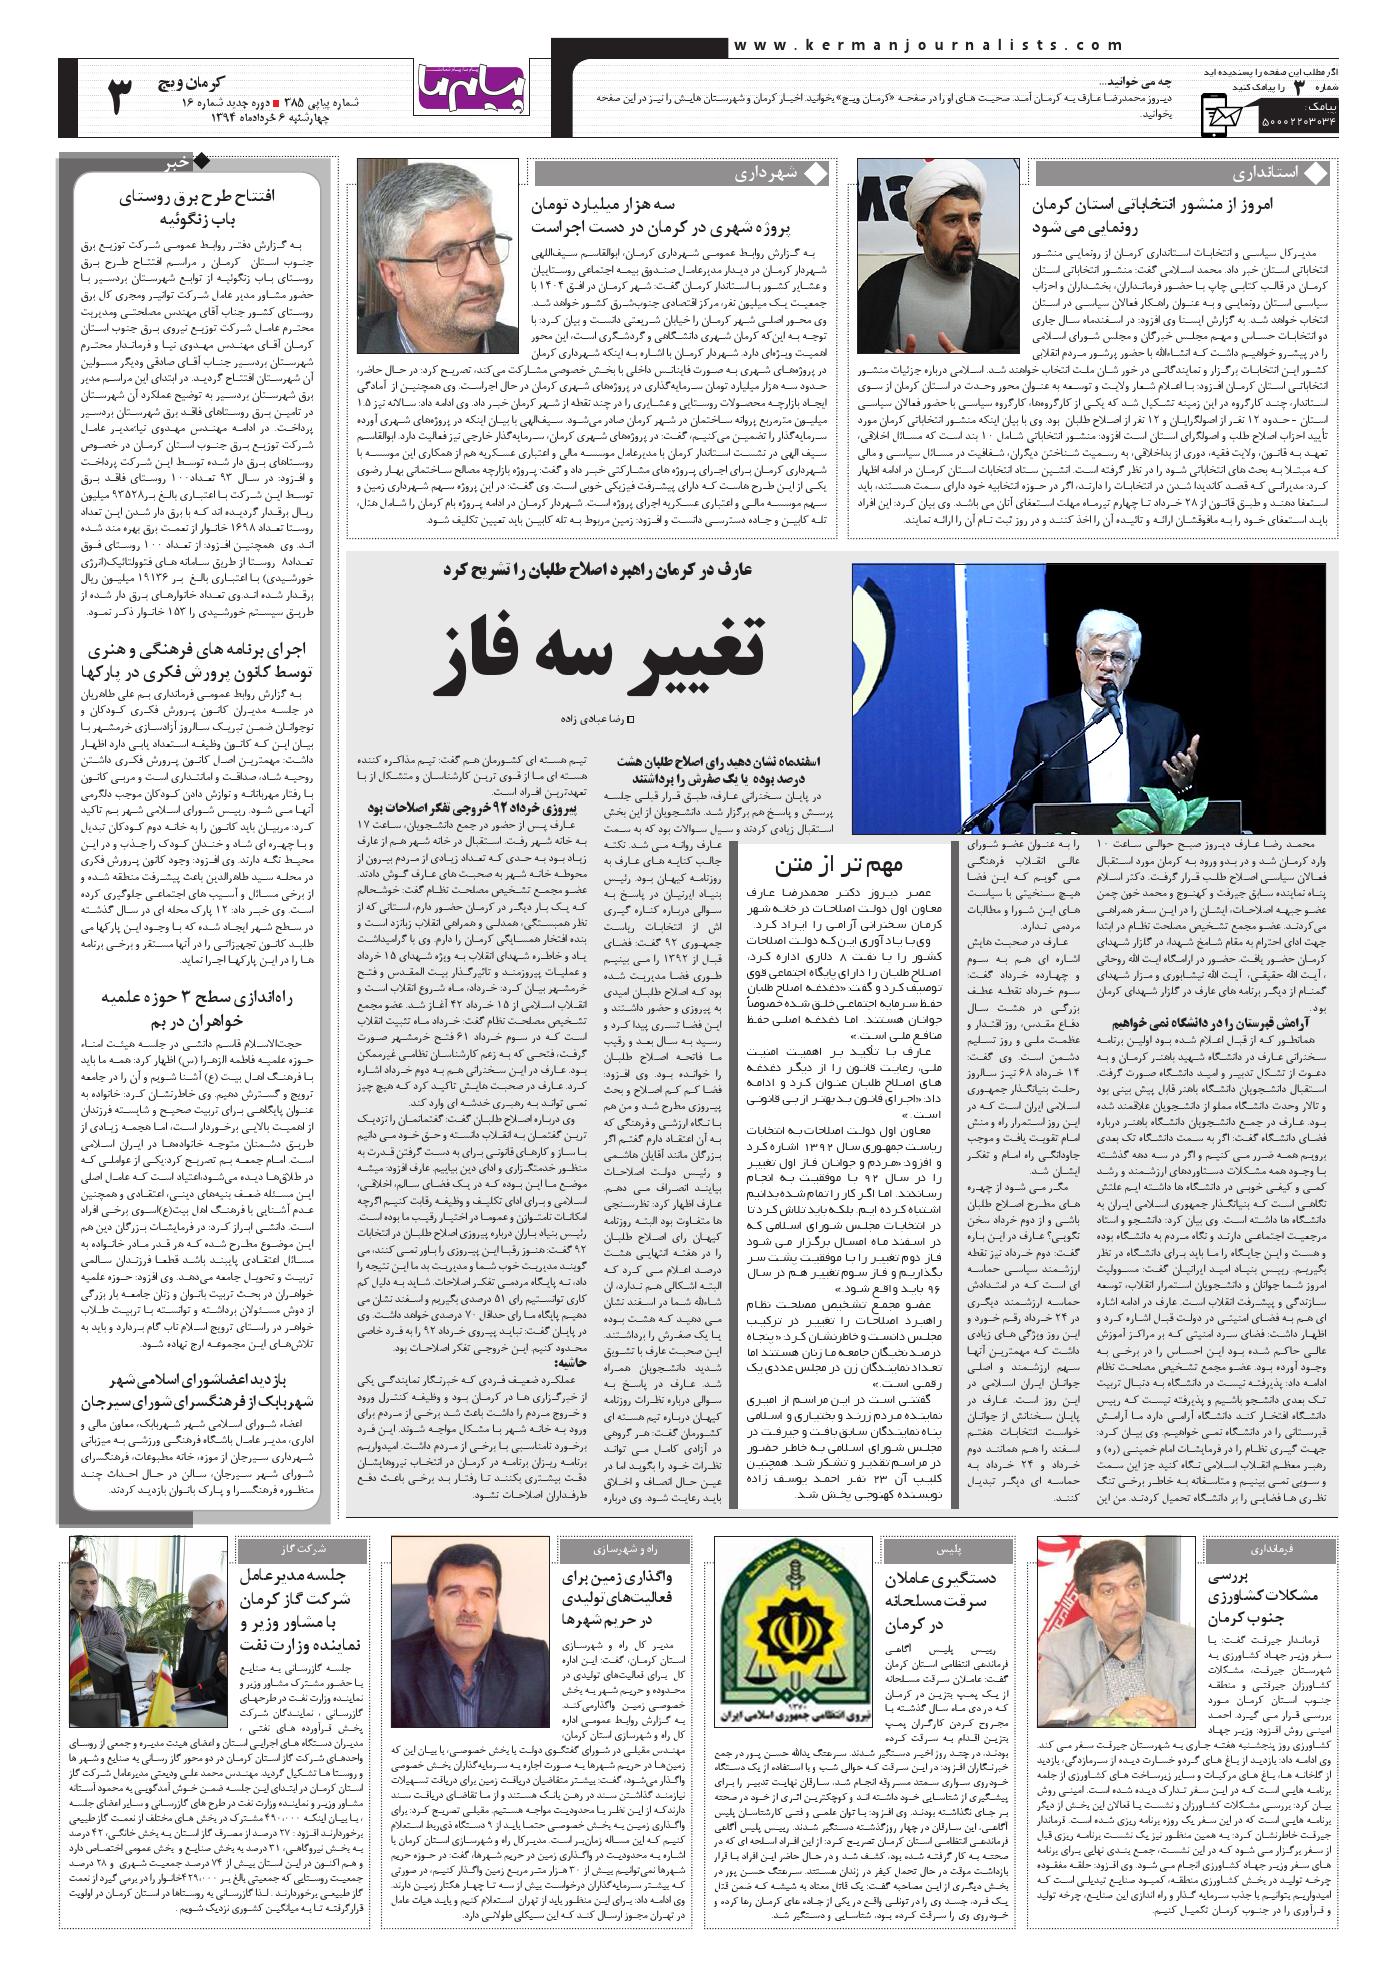 امروز از منشور انتخاباتی استان کرمان رونمایی می شود